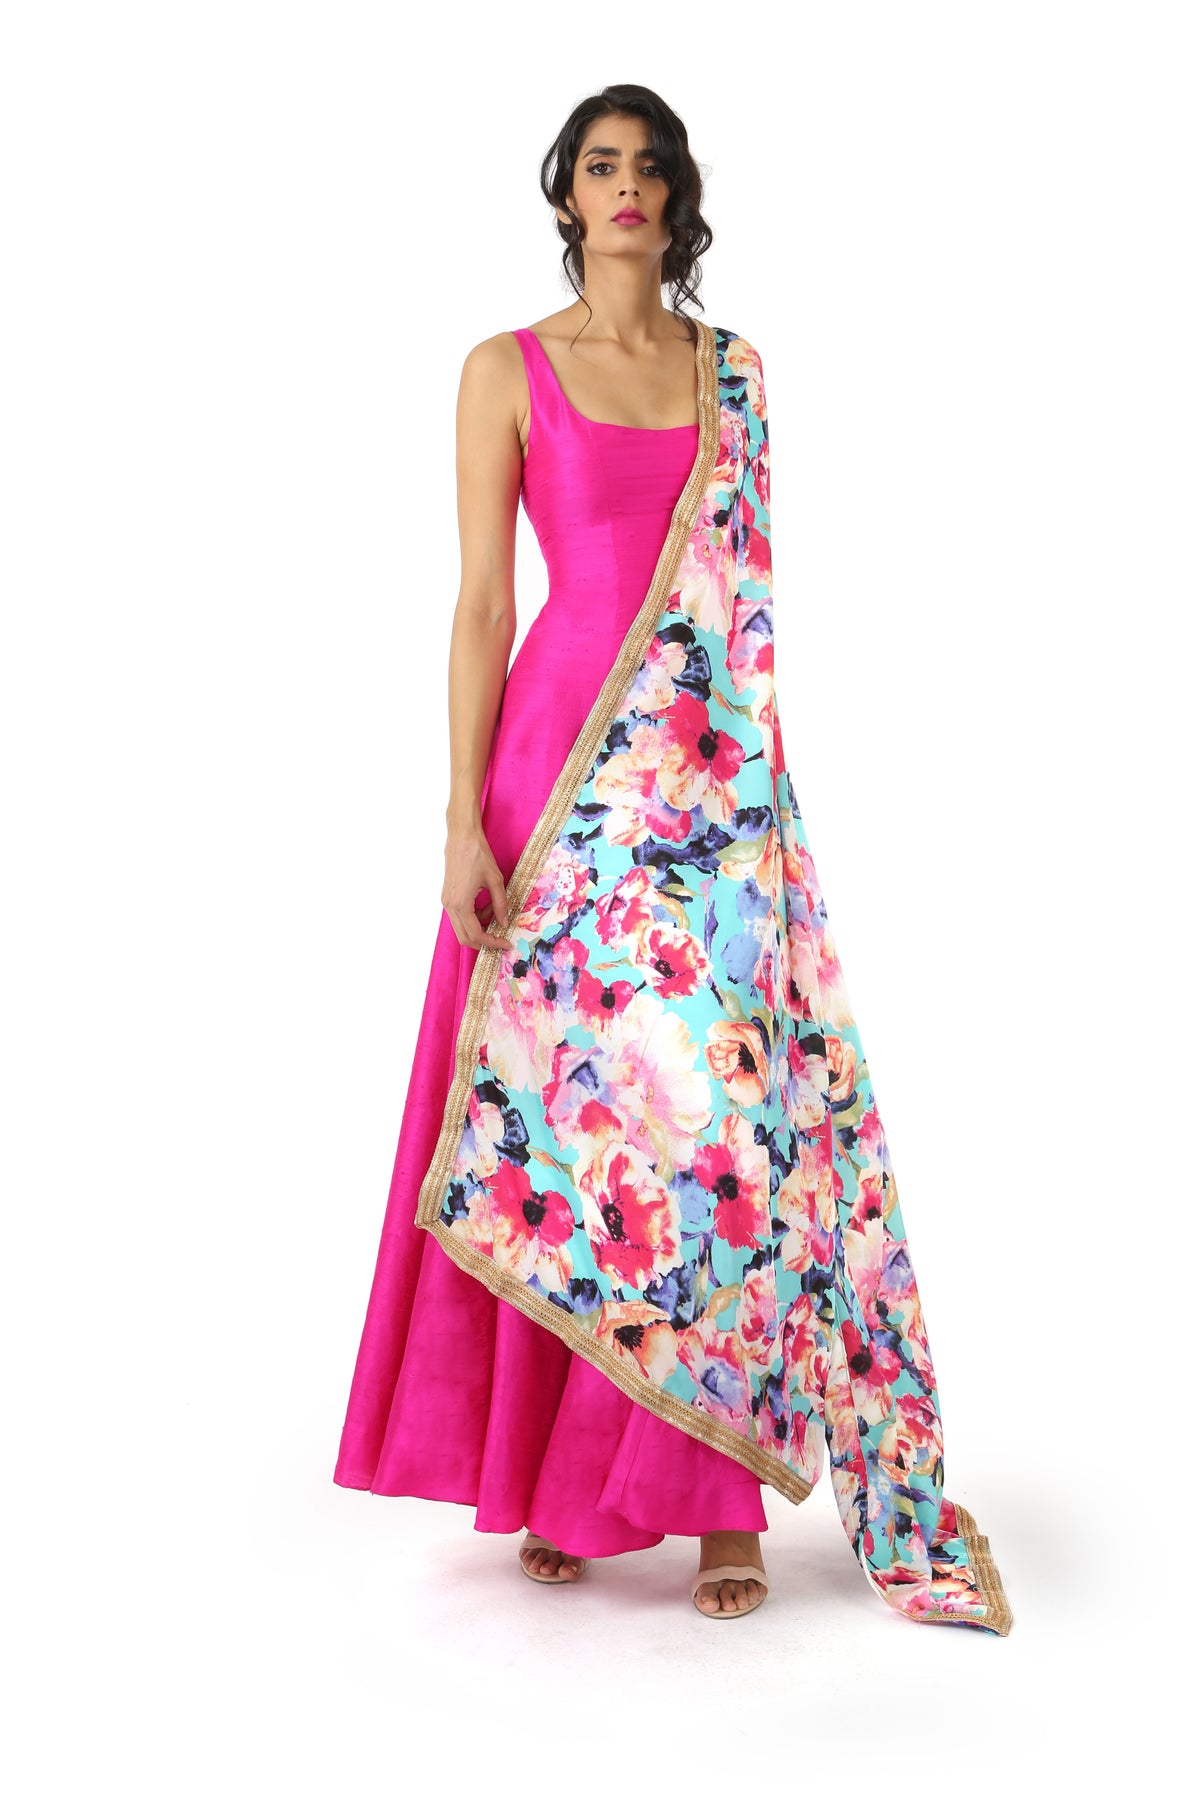 Harleen Kaur Mansi Fuchsia Silk Dress with Scoop Neck - Front View